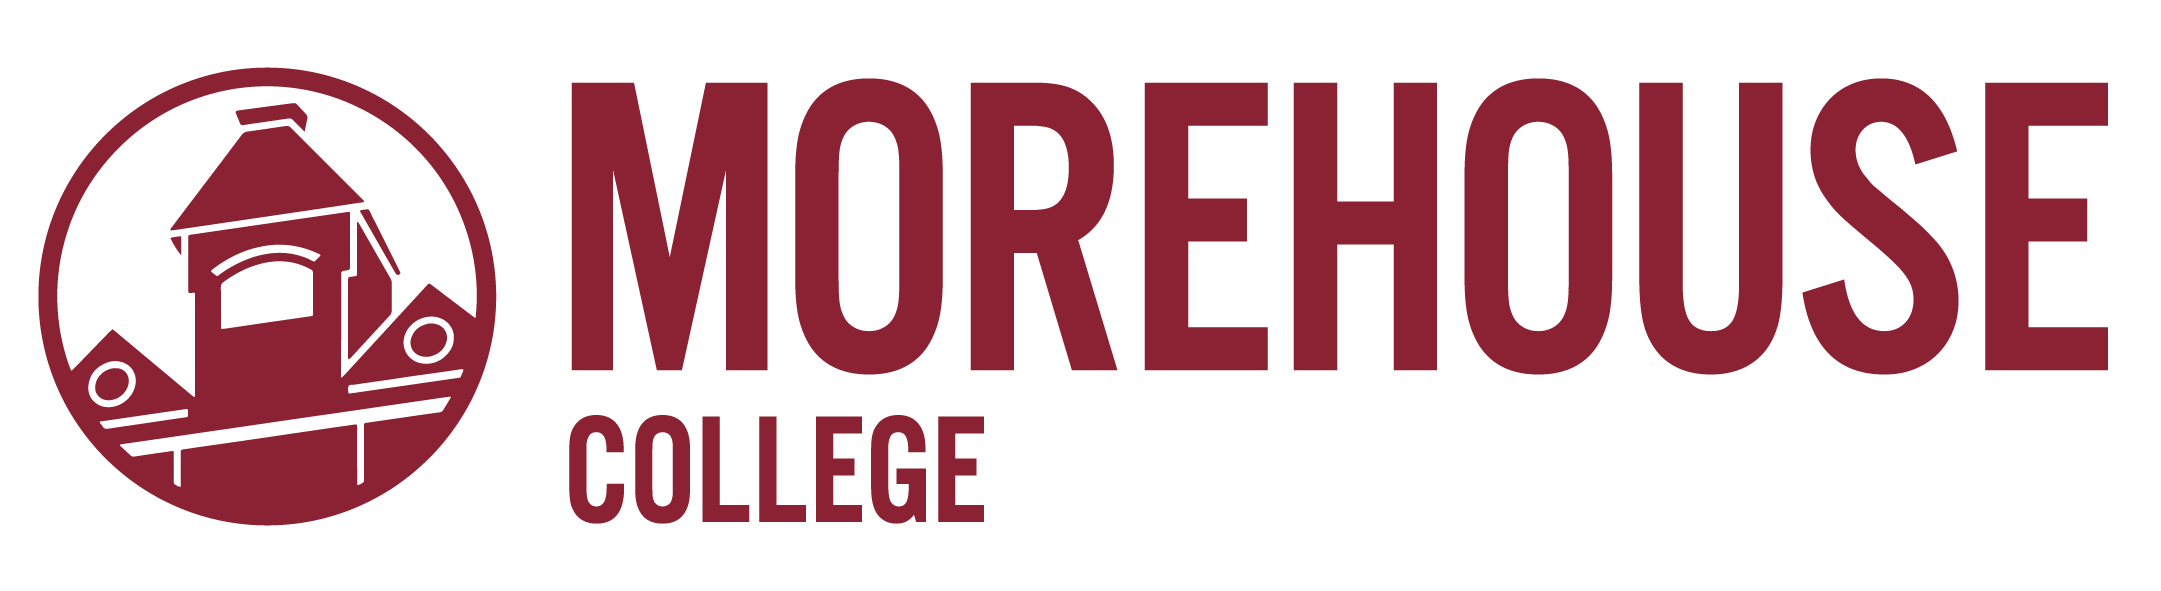 Logotipo da Morehouse College